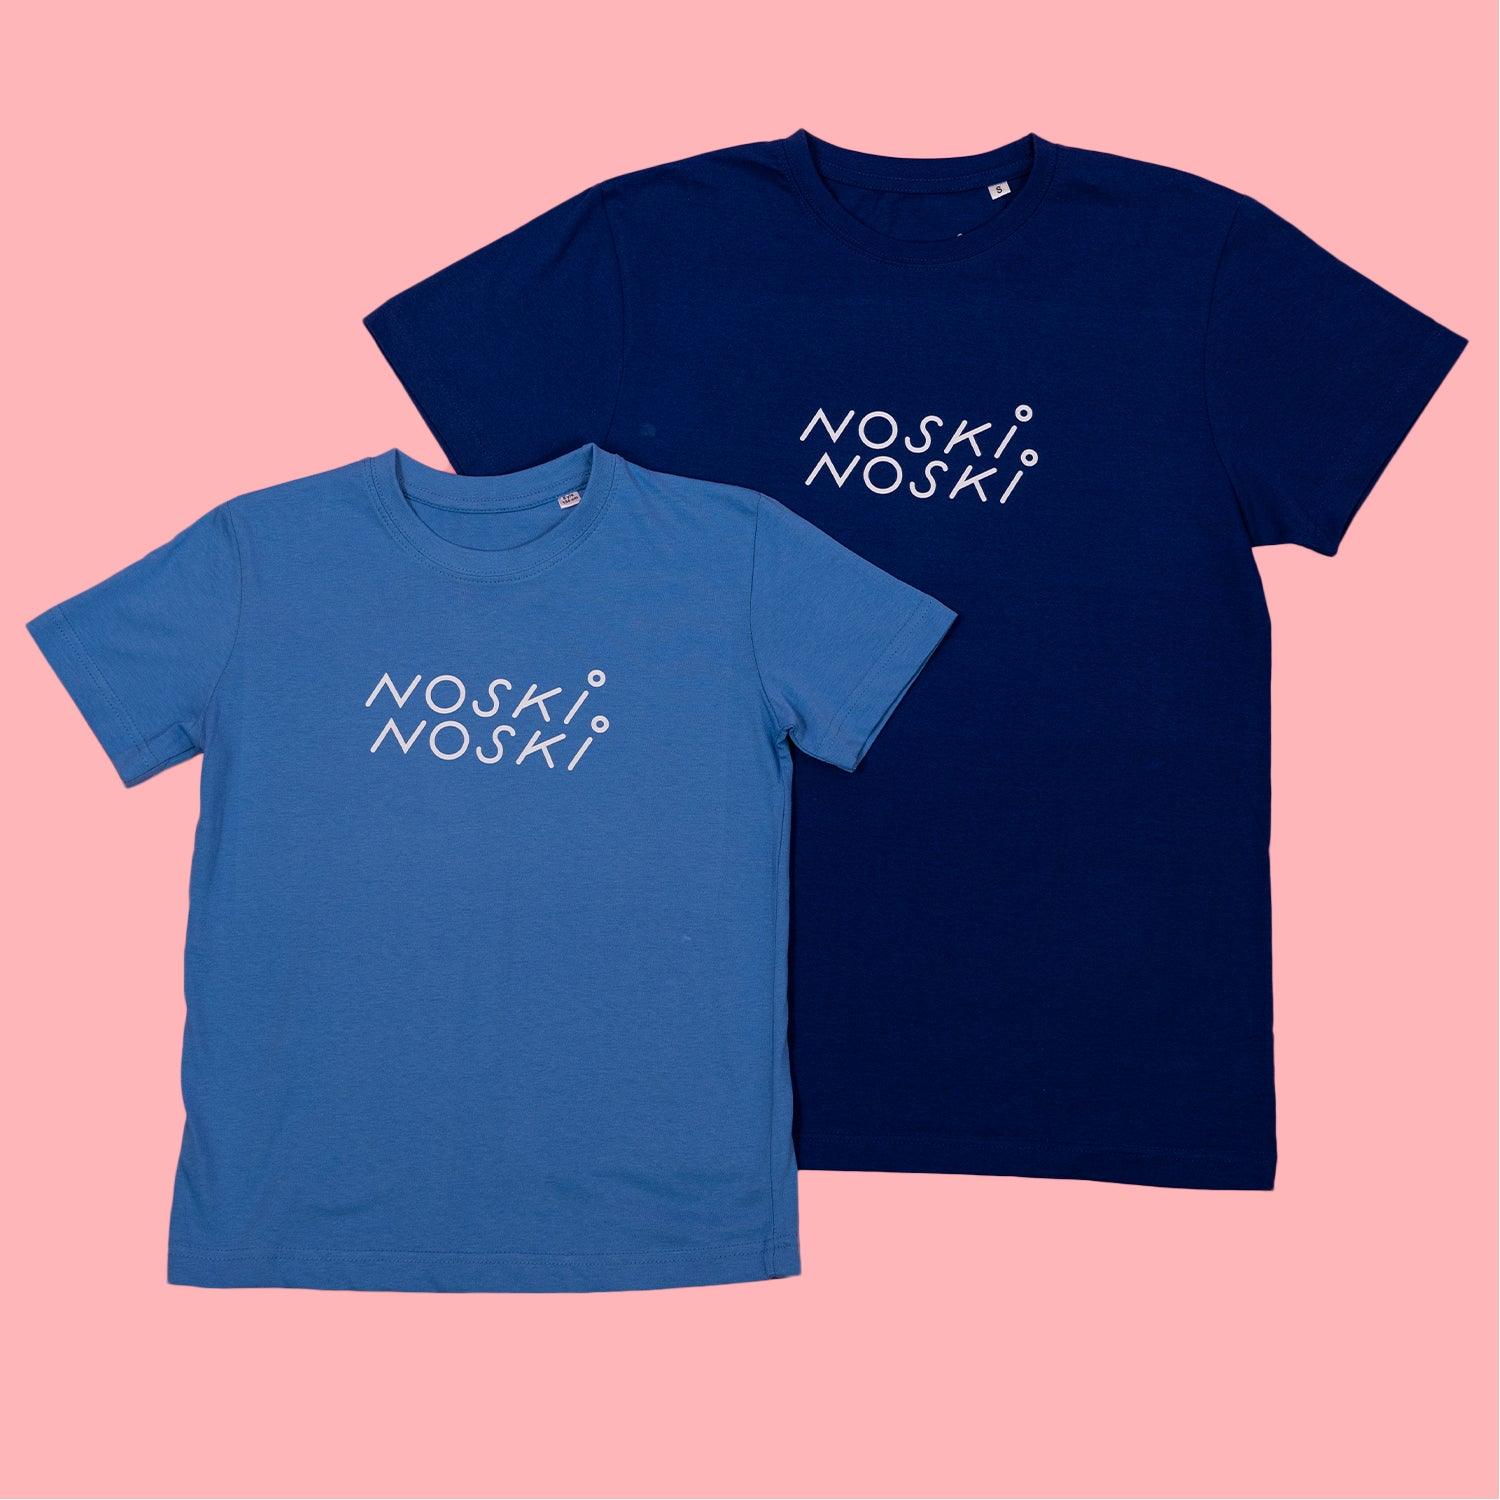 Noski Noski: NN shirt